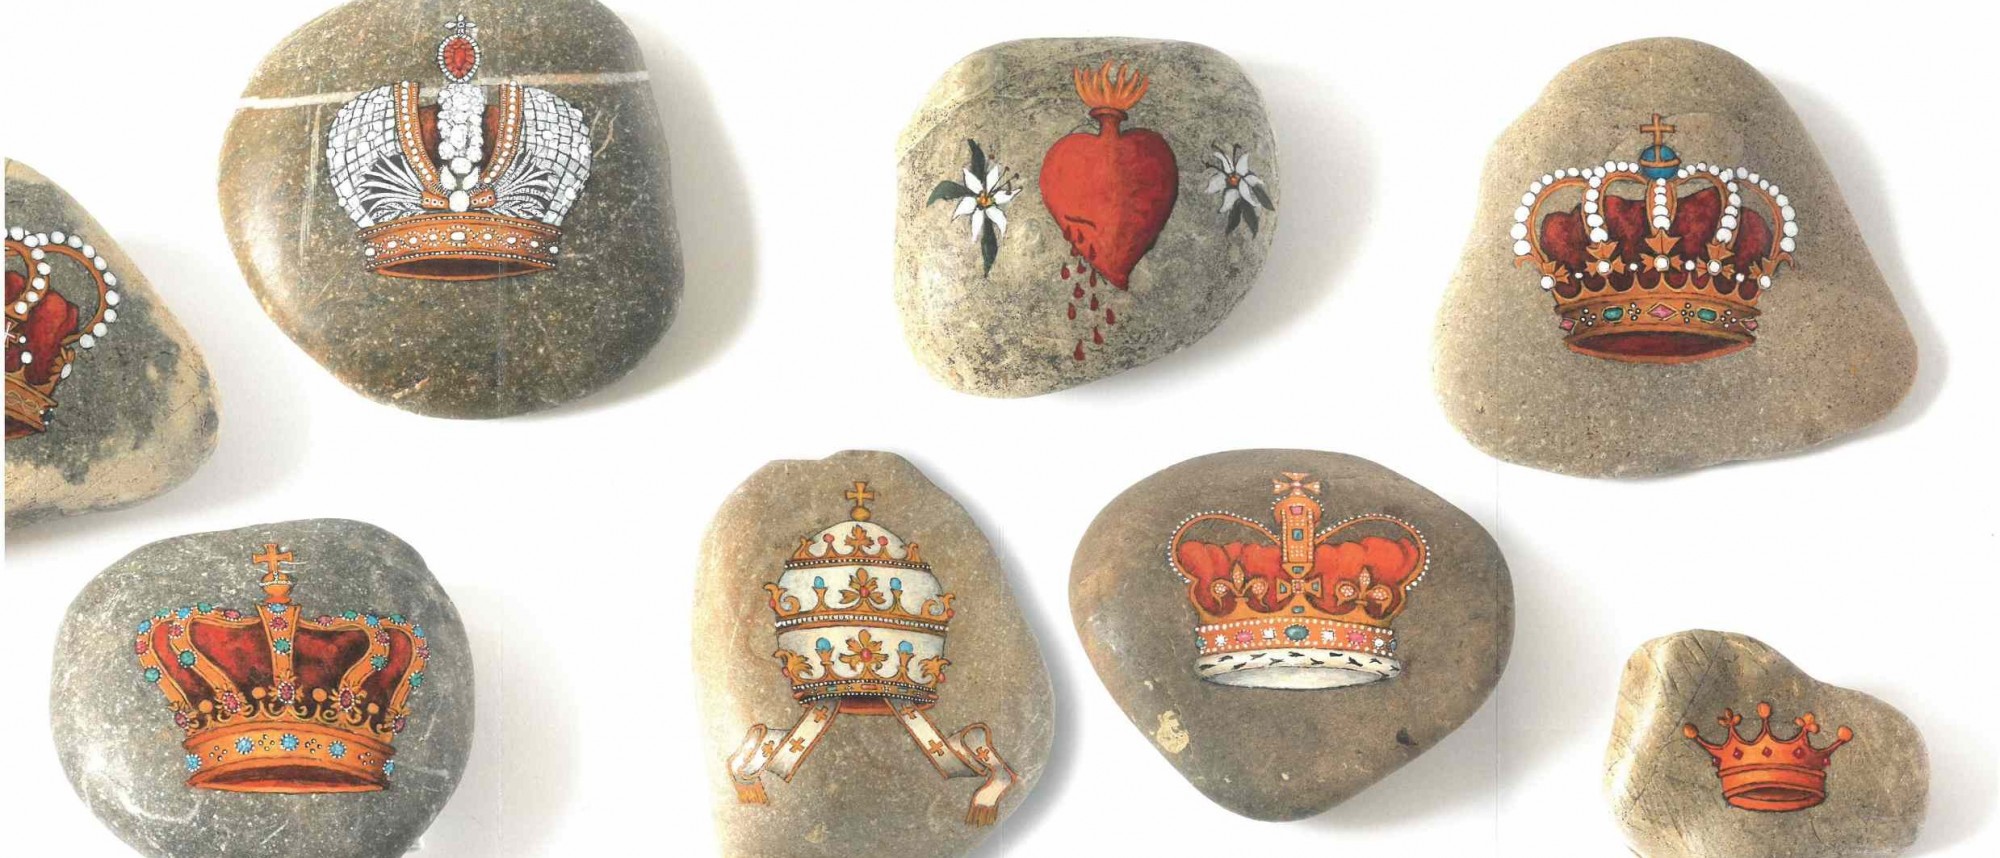 Steine bemalt mit unterschiedlichen Kronen